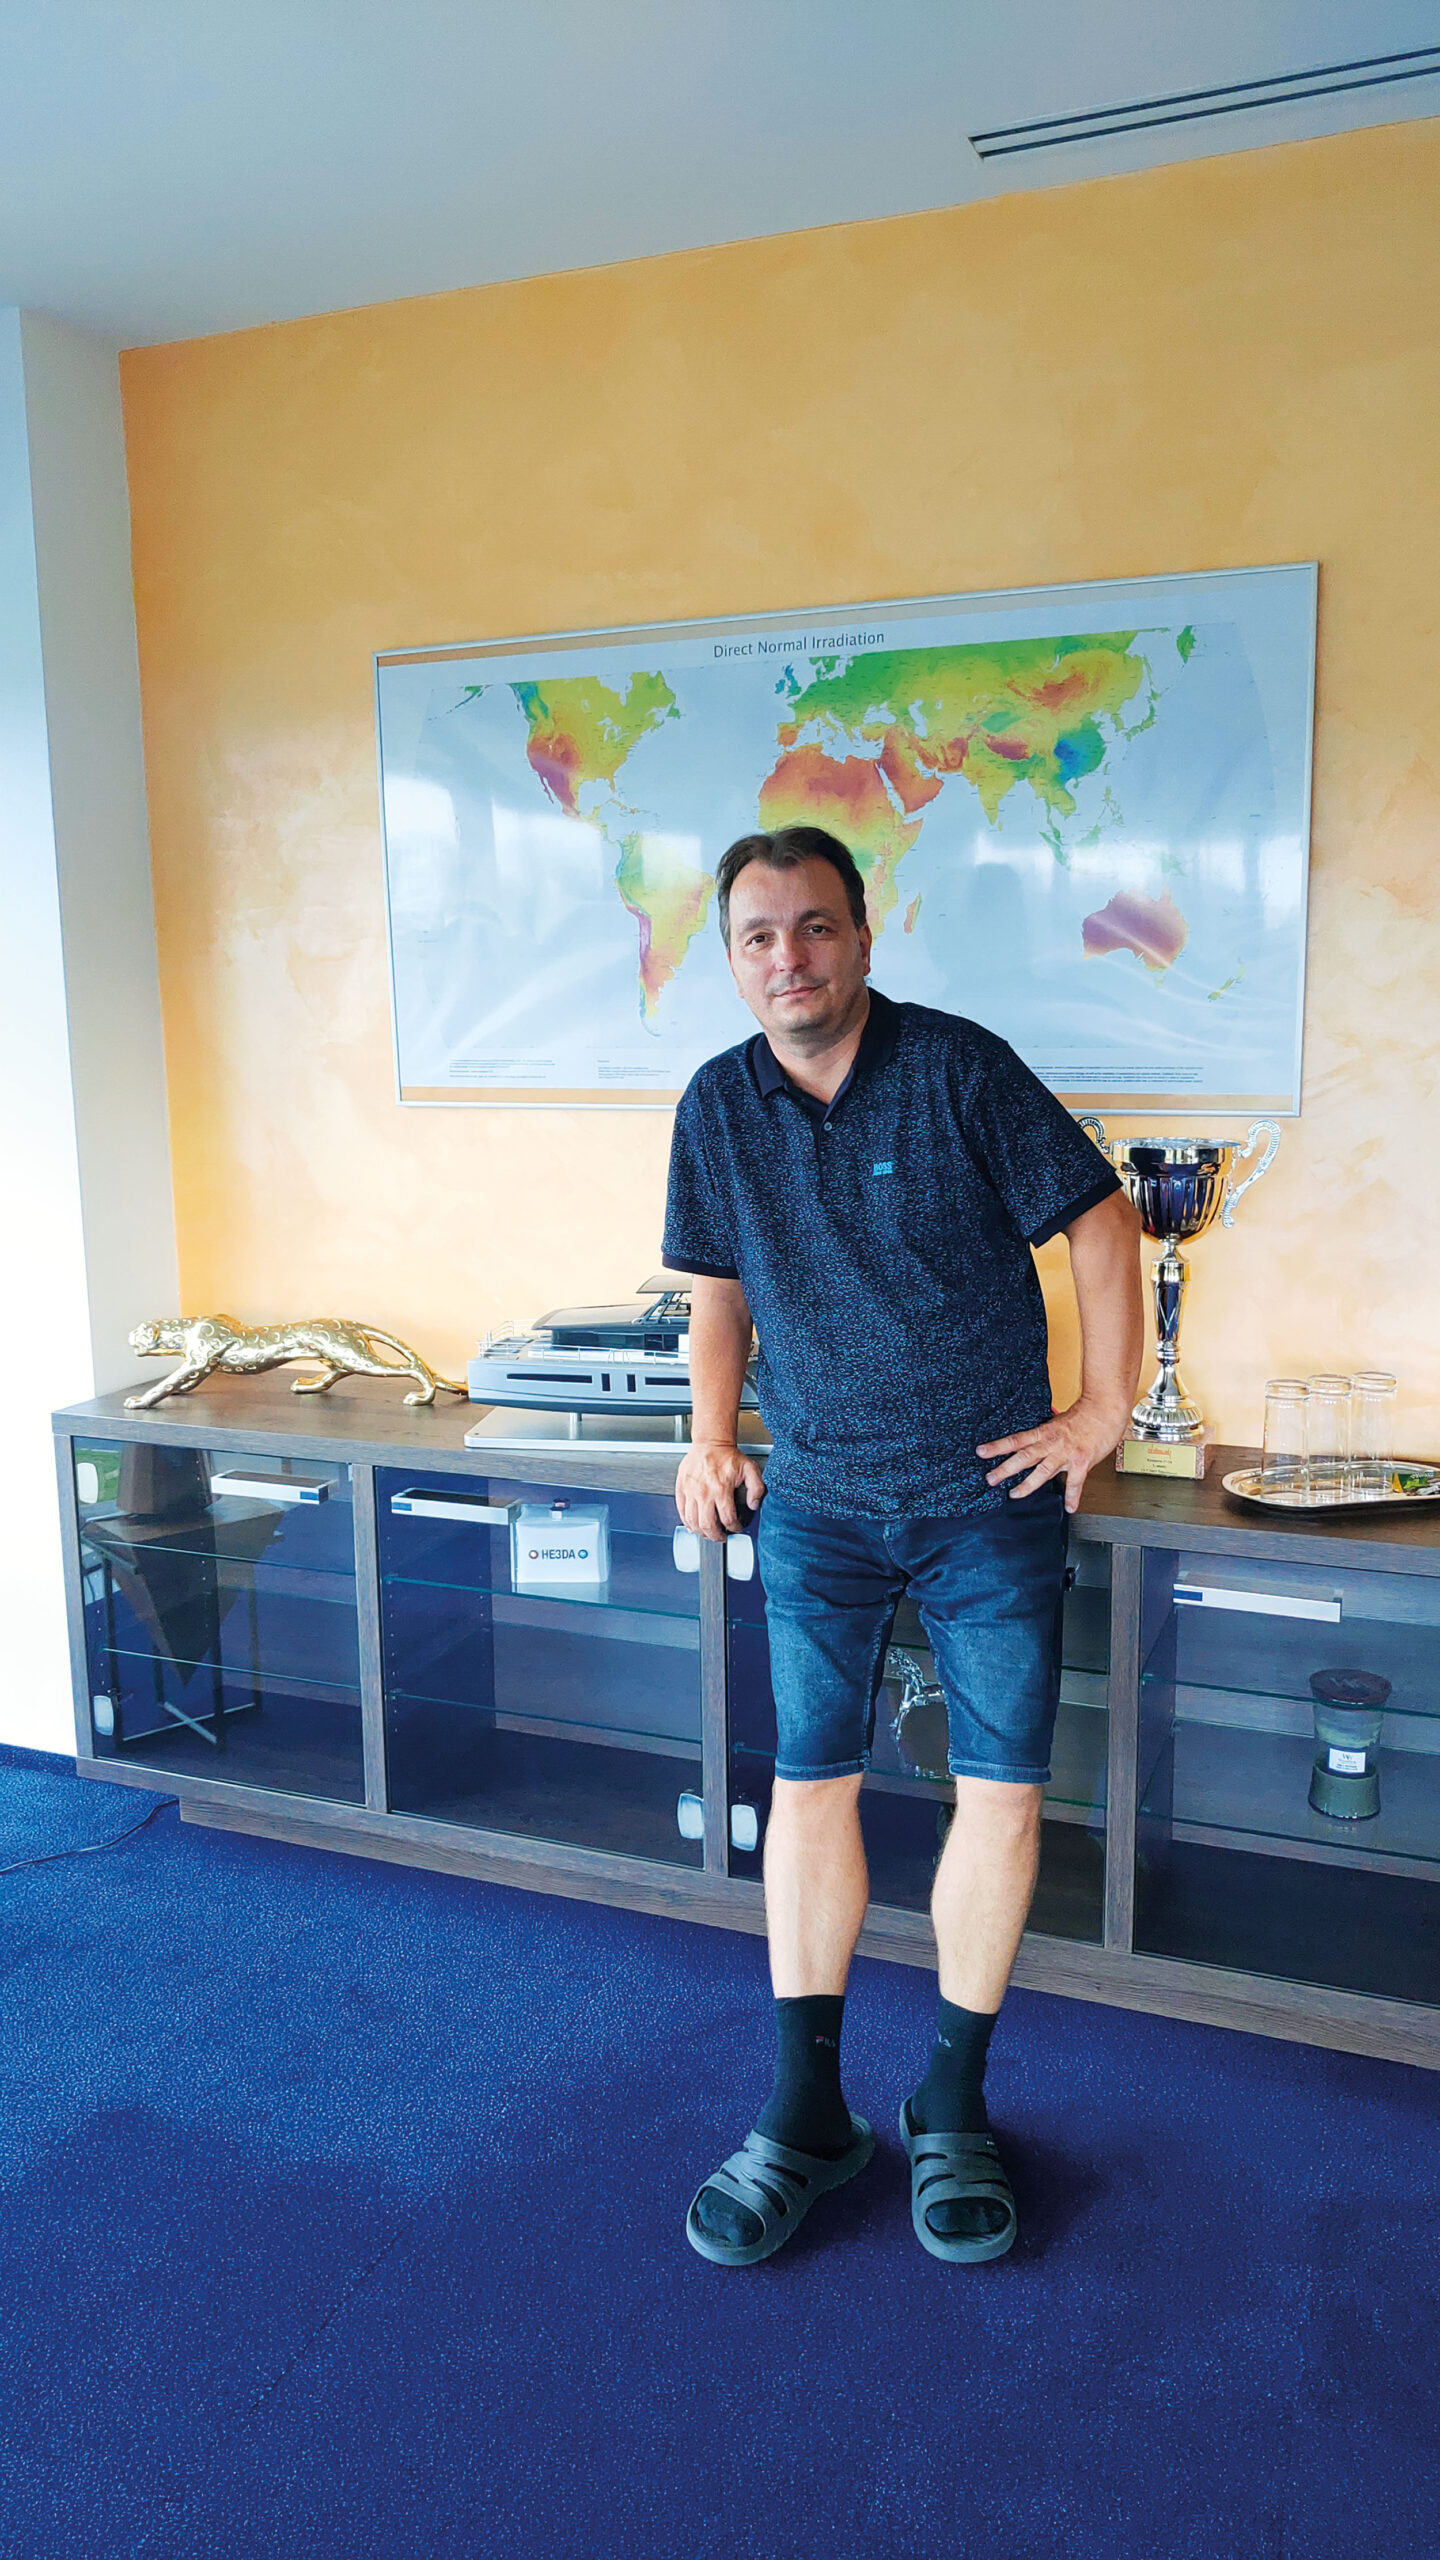 Ve své kanceláři po návratu z Turecka, kde dokončoval stavbu solárního katamaránu (model má po pravé ruce).